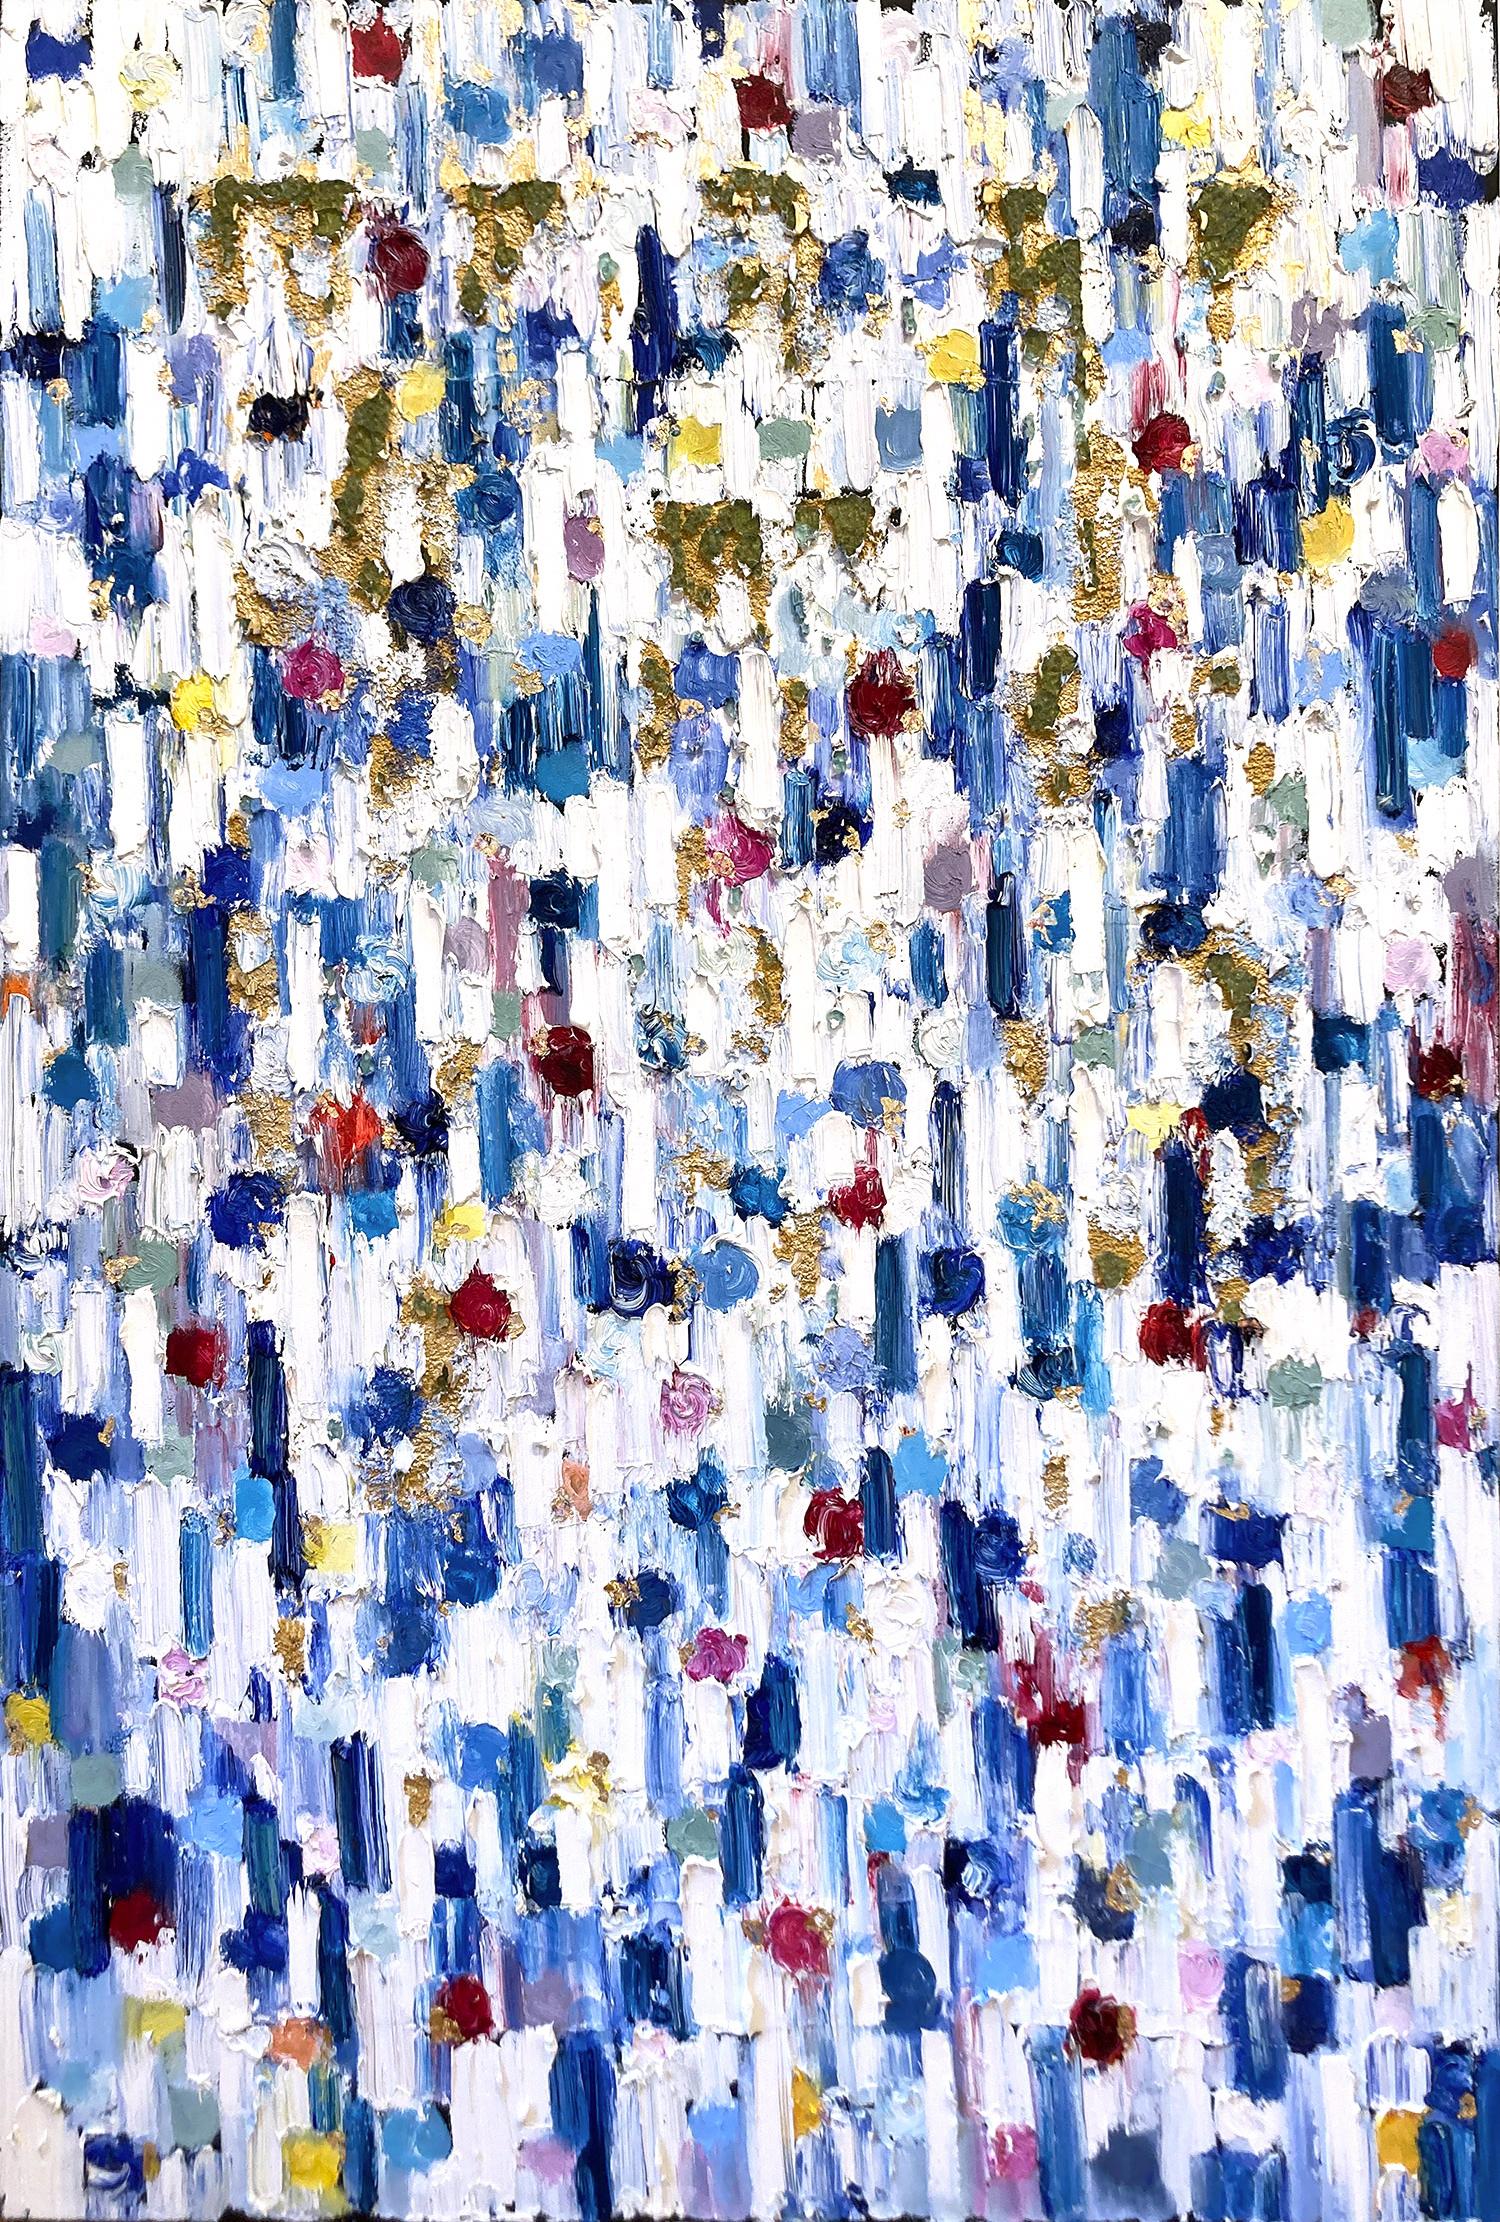 « Droping Dots - St. Tropez », peinture à l'huile abstraite contemporaine colorée sur toile